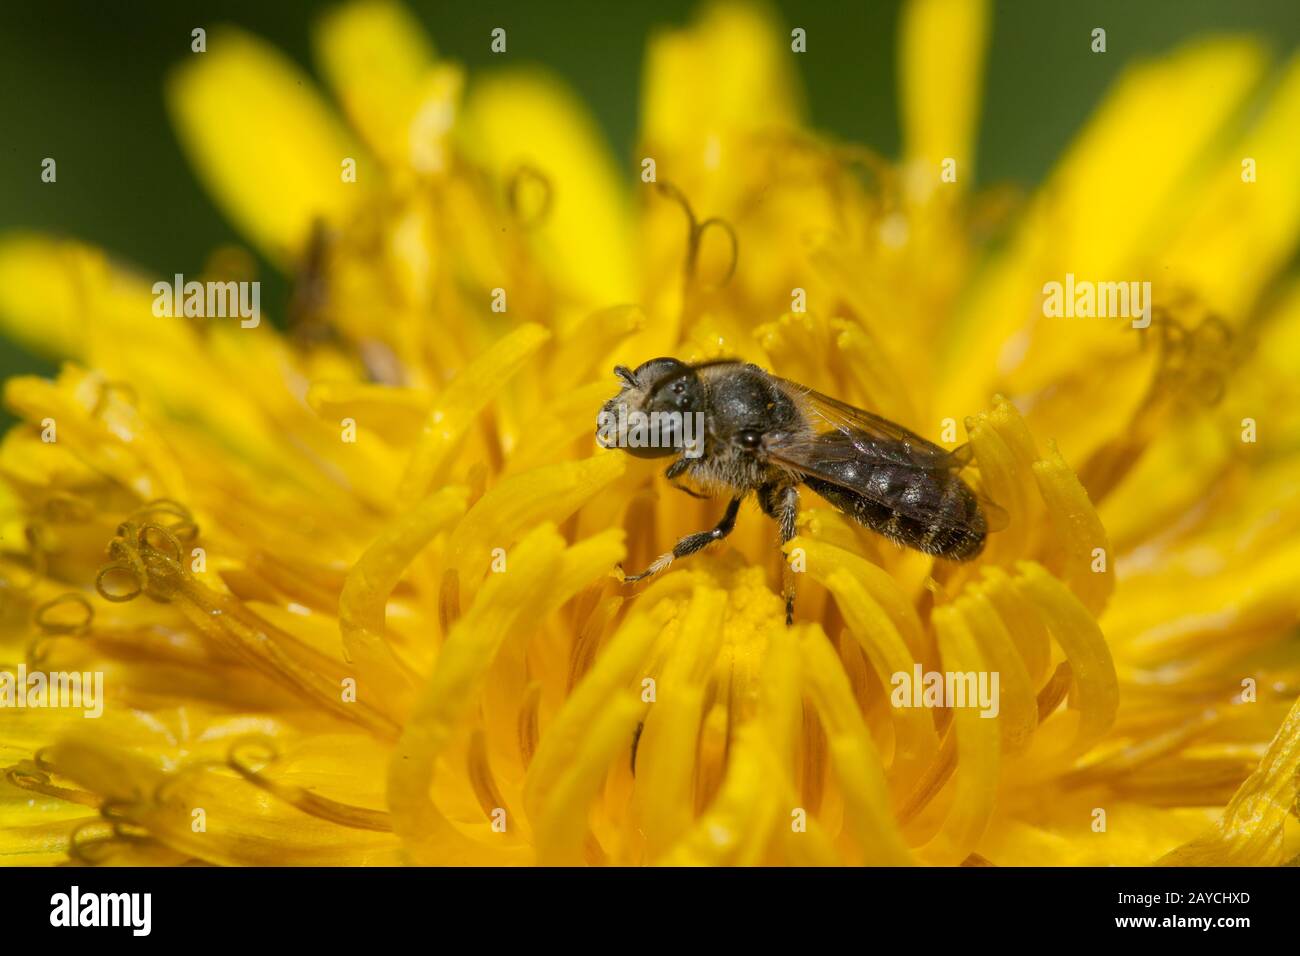 Une petite abeille solitaire (famille des Apidae, genre Lamioglossum) dans une fleur de pissenlit Banque D'Images